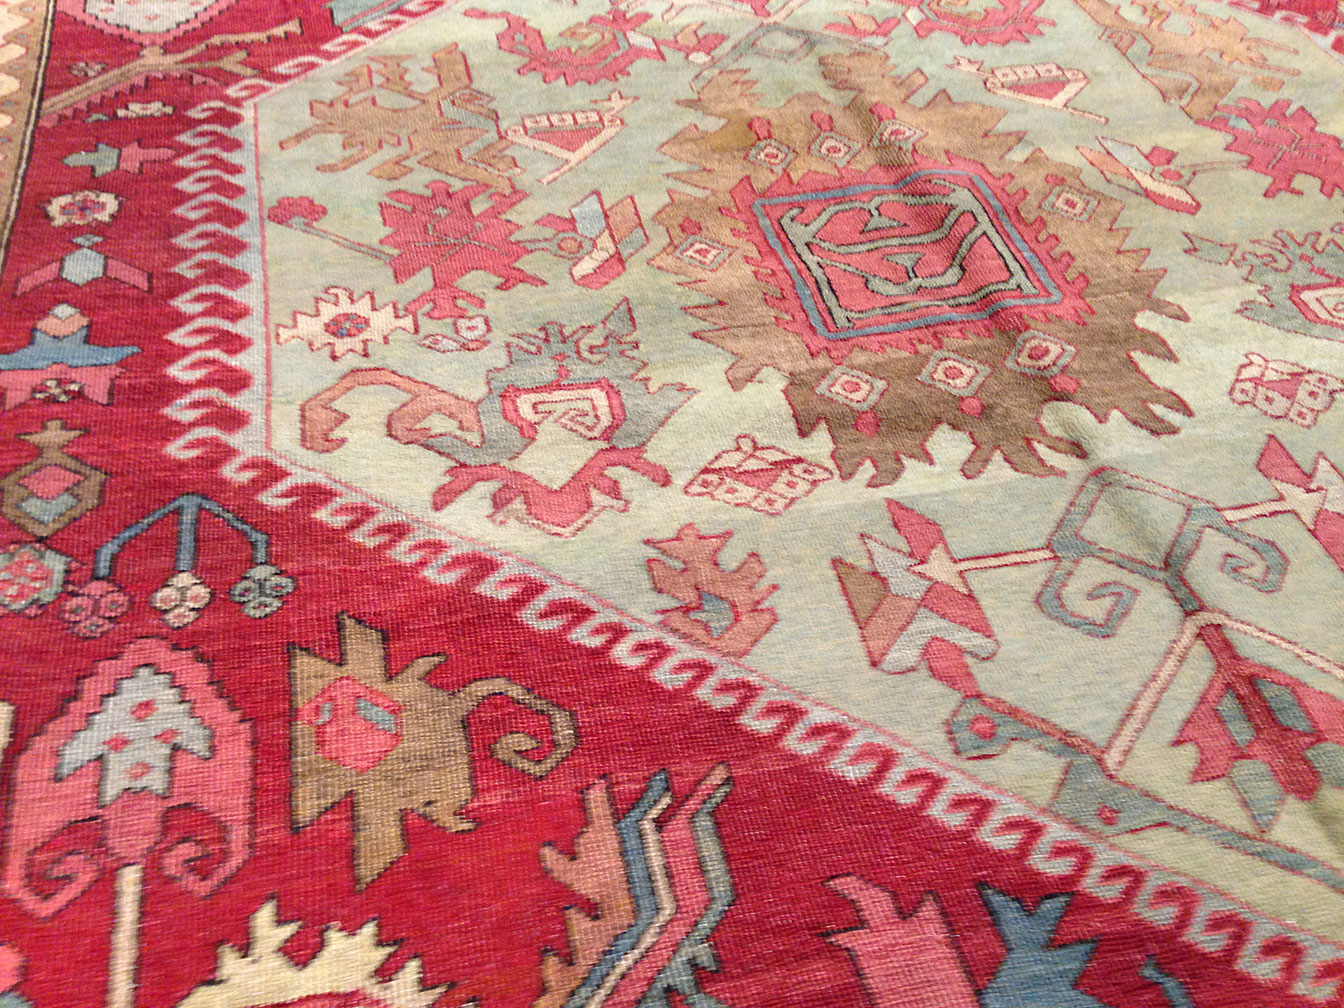 Antique bakshaish Carpet - # 9463